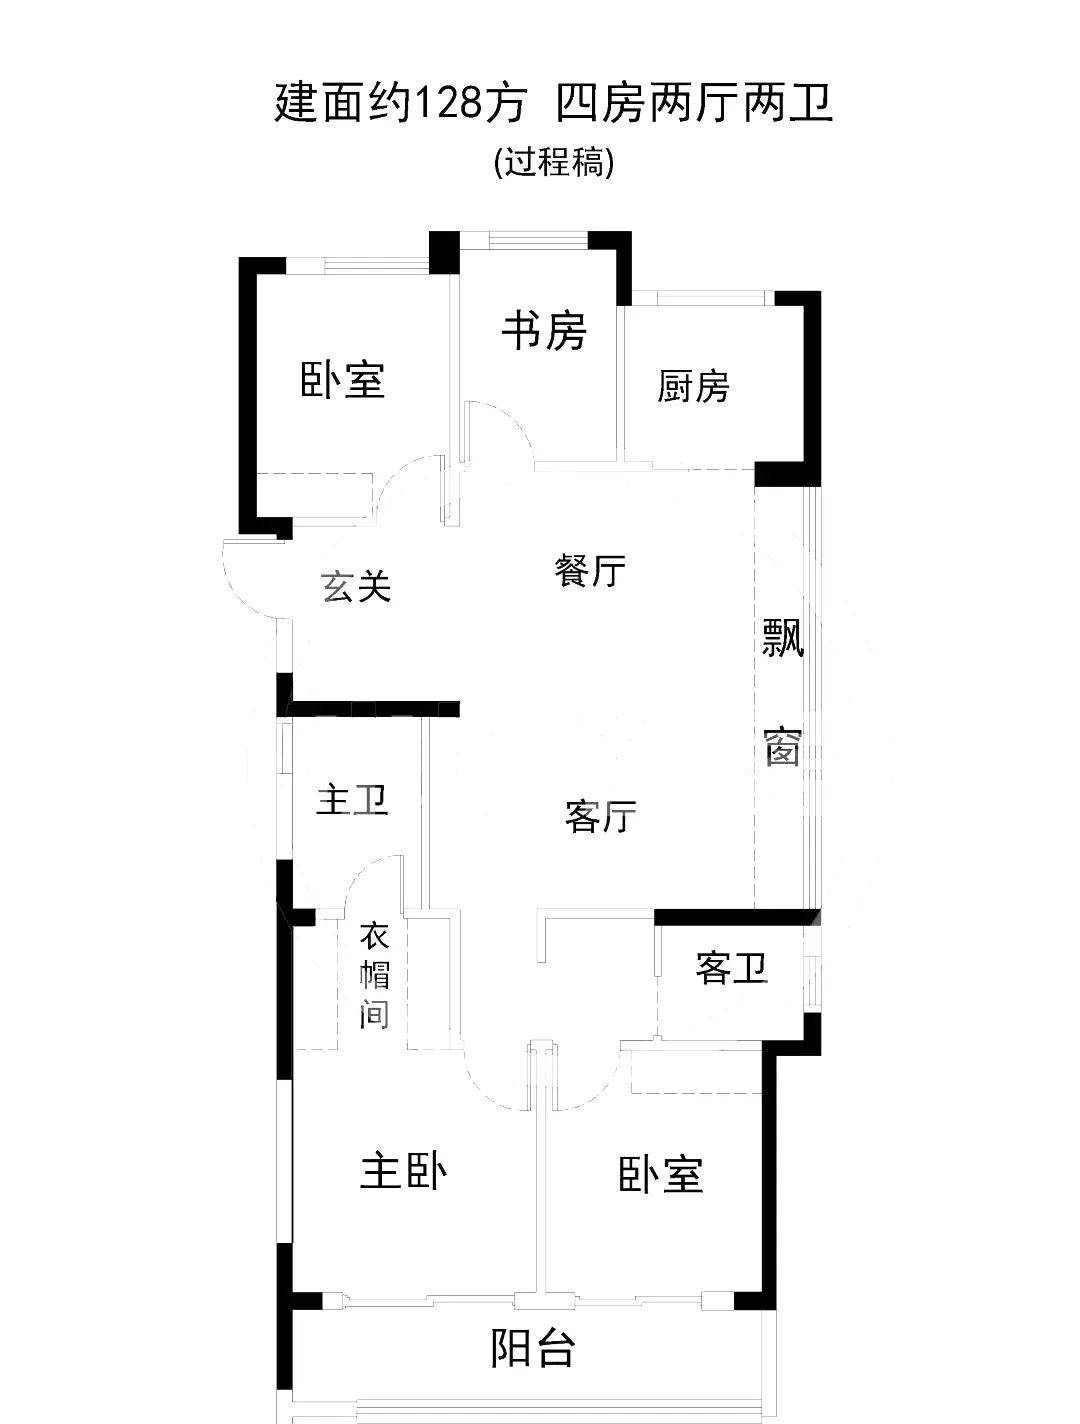 杭州绿城华润晓月映翠128方四房两厅两卫边套